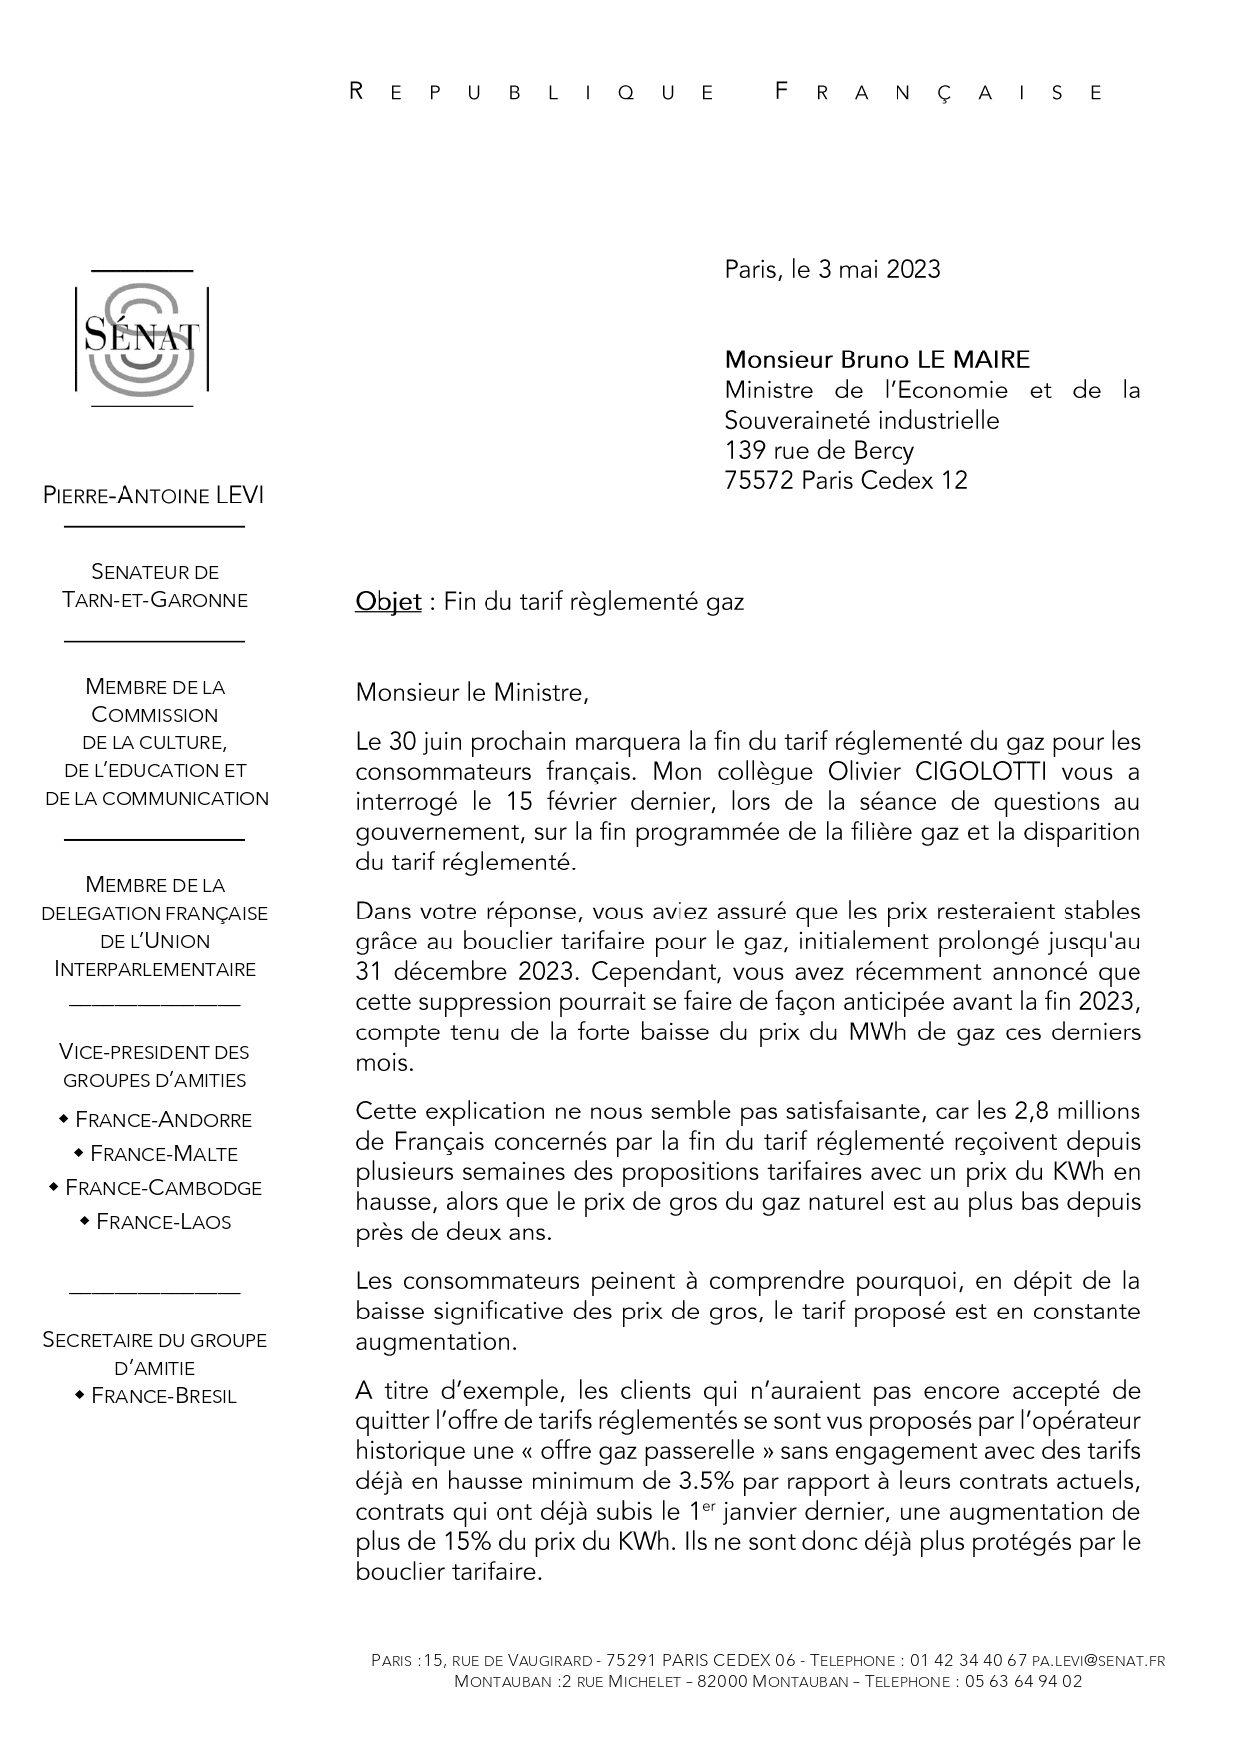 Tarn et garonne - 58 sénateurs demandent au ministre de l'Économie, Bruno Le Maire  de maintenir le tarif règlementé d